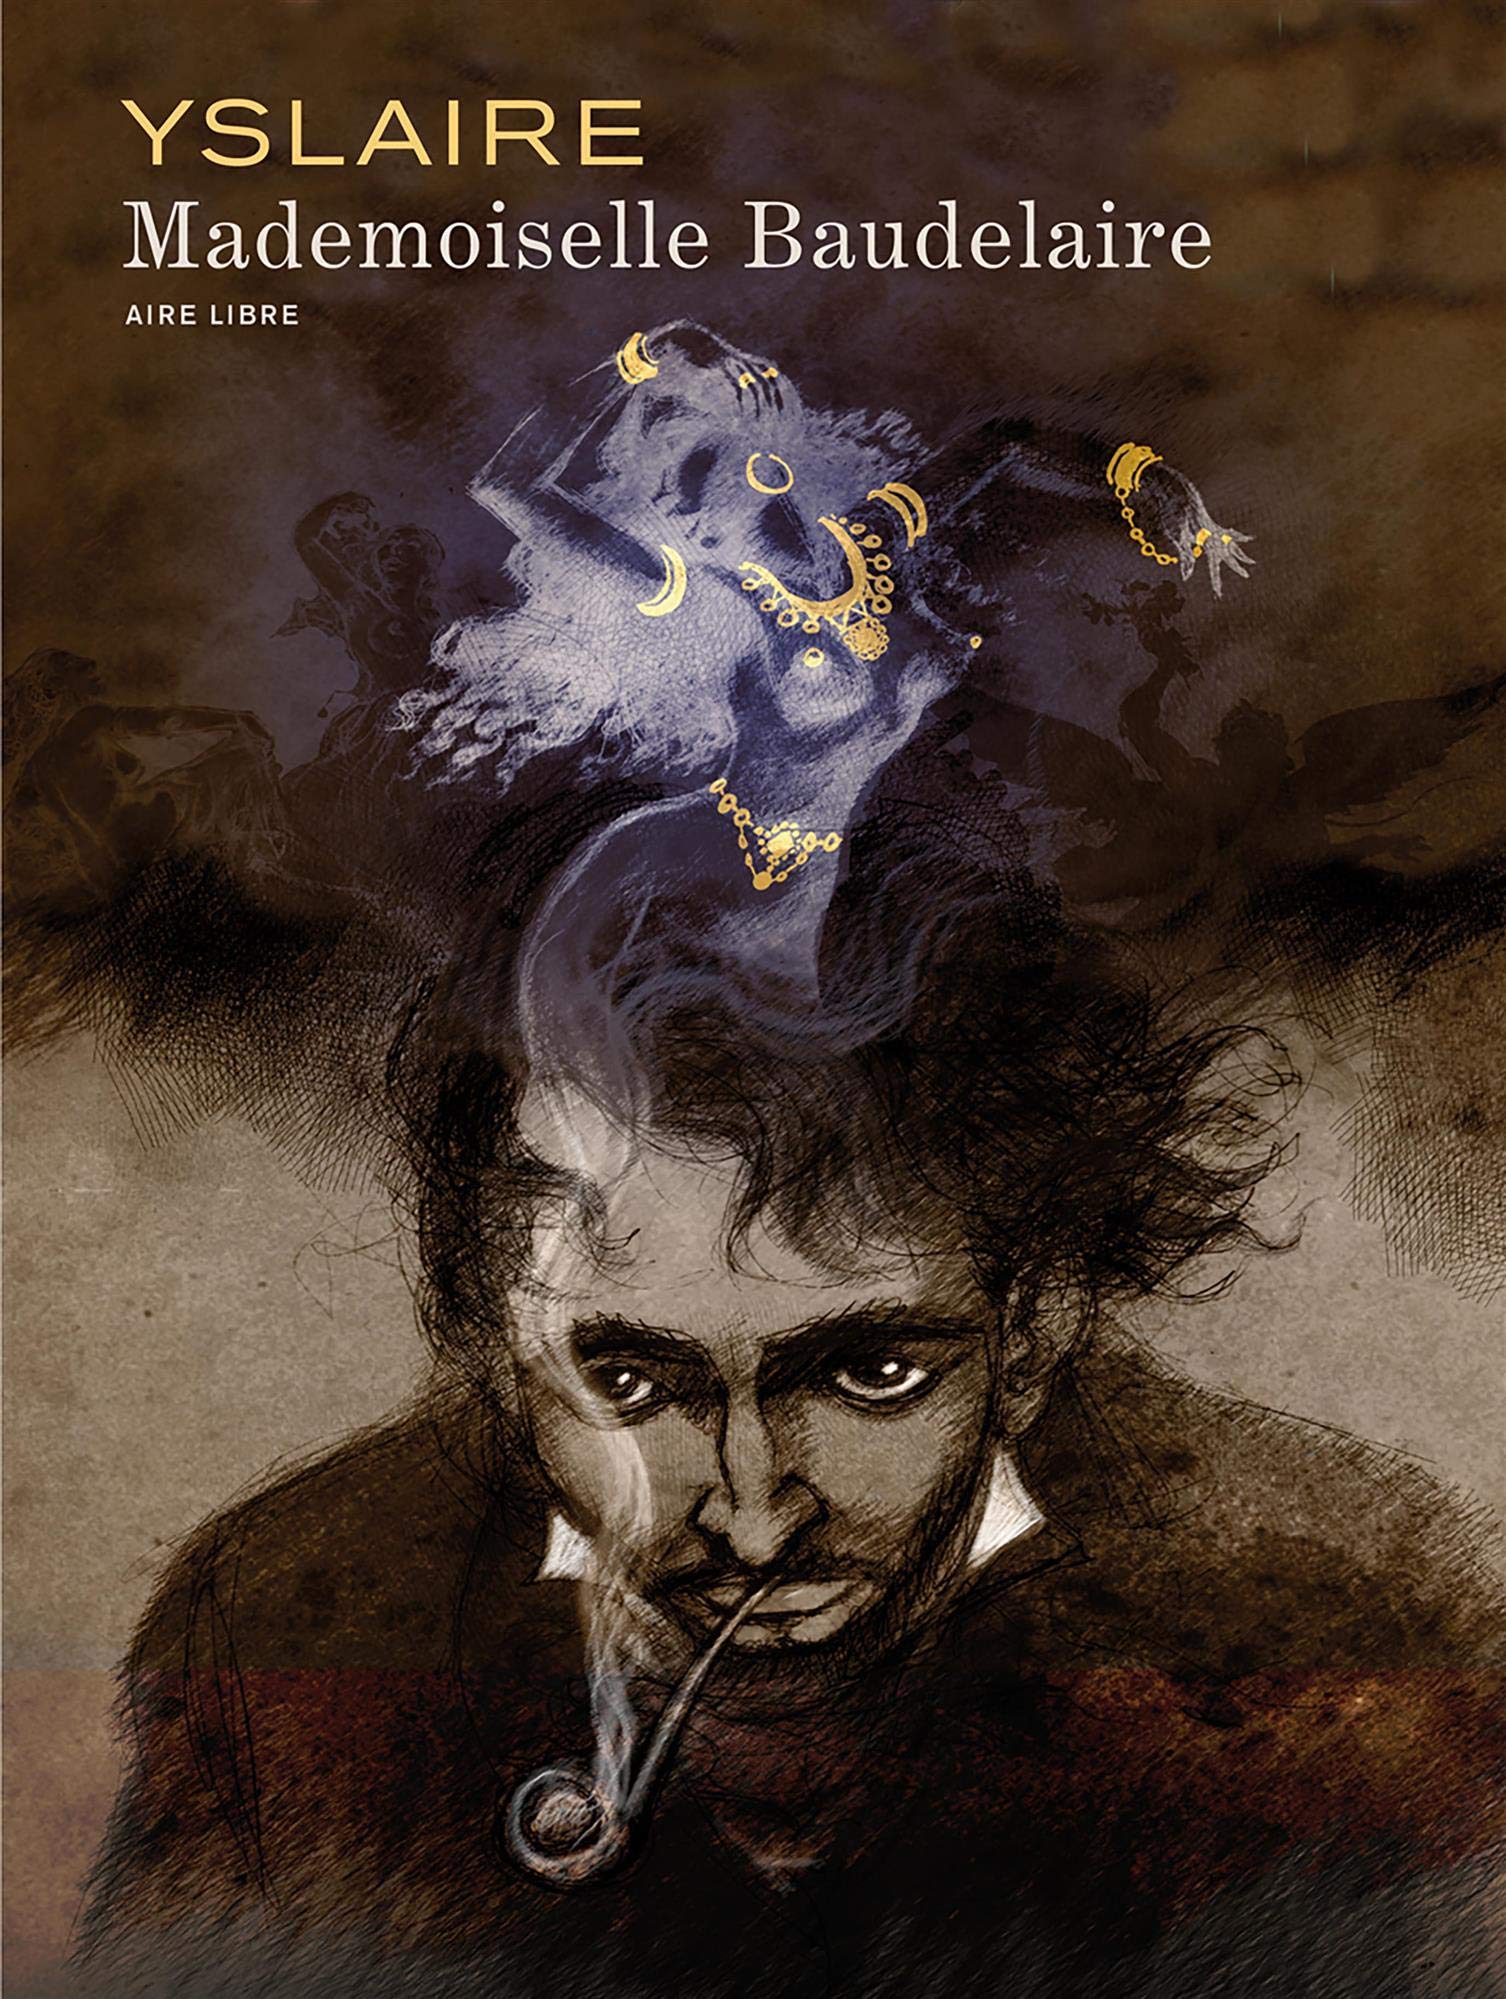 CONCOURS - Gagnez « Mademoiselle Baudelaire », le dernier chef d'œuvre d'Yslaire